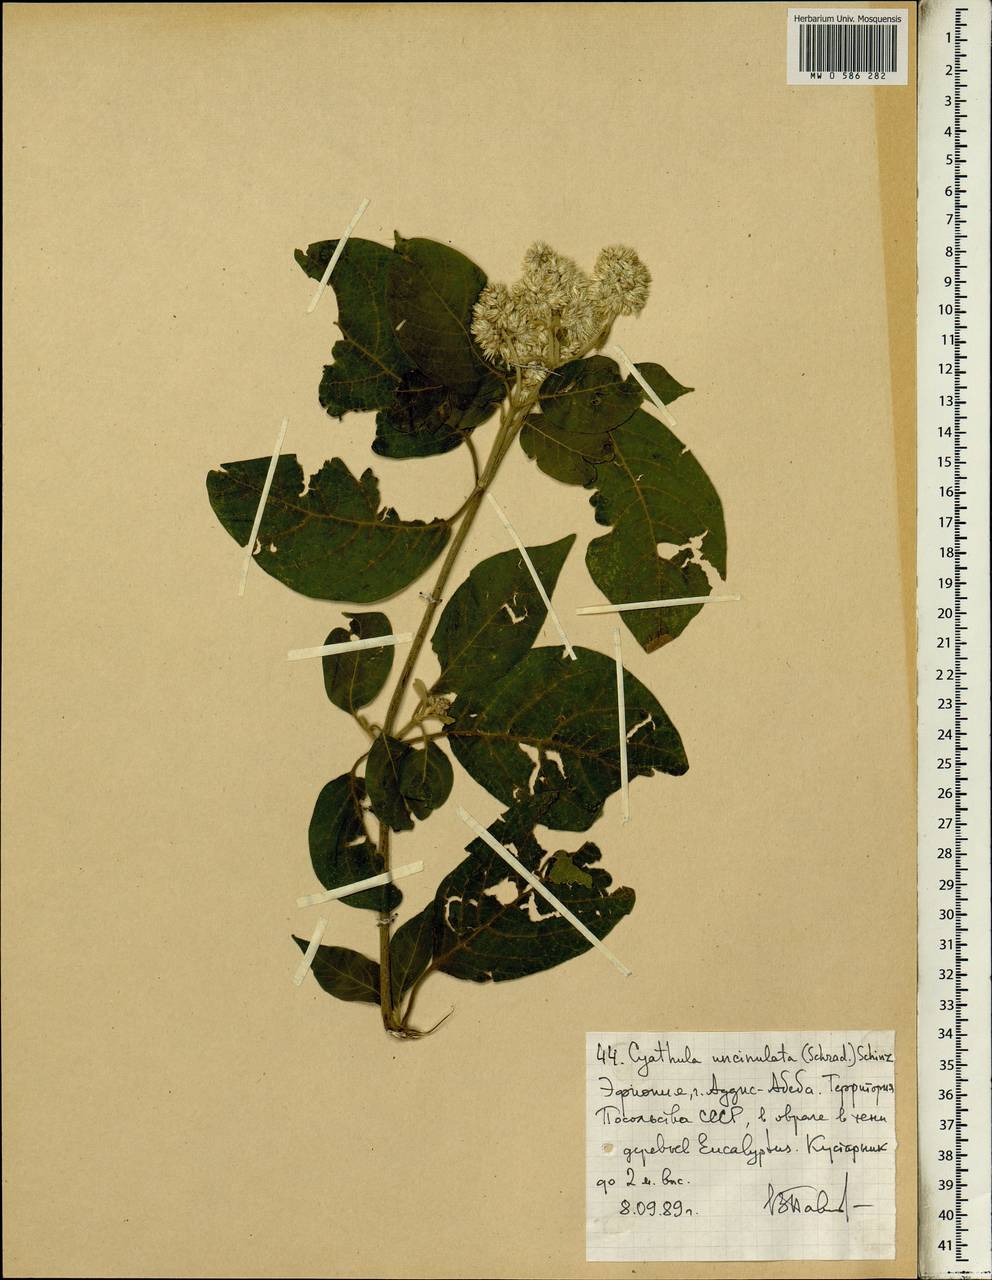 Cyathula uncinulata (Schrad.) Schinz, Africa (AFR) (Ethiopia)